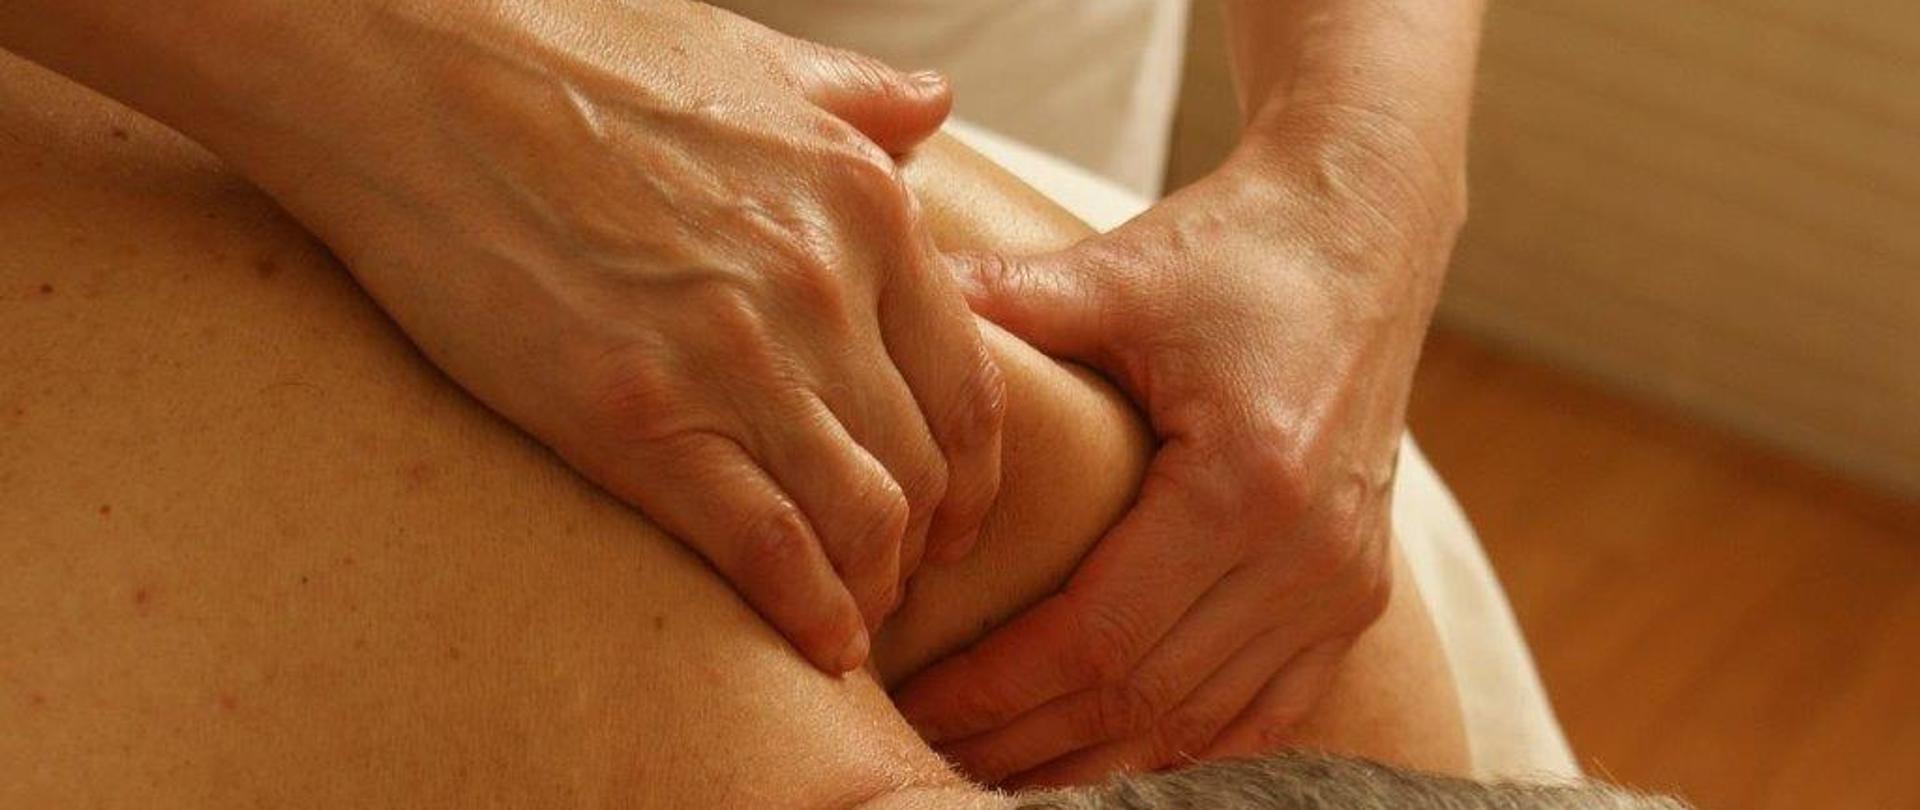 grafika przedstawia dłonie podczas masażu 